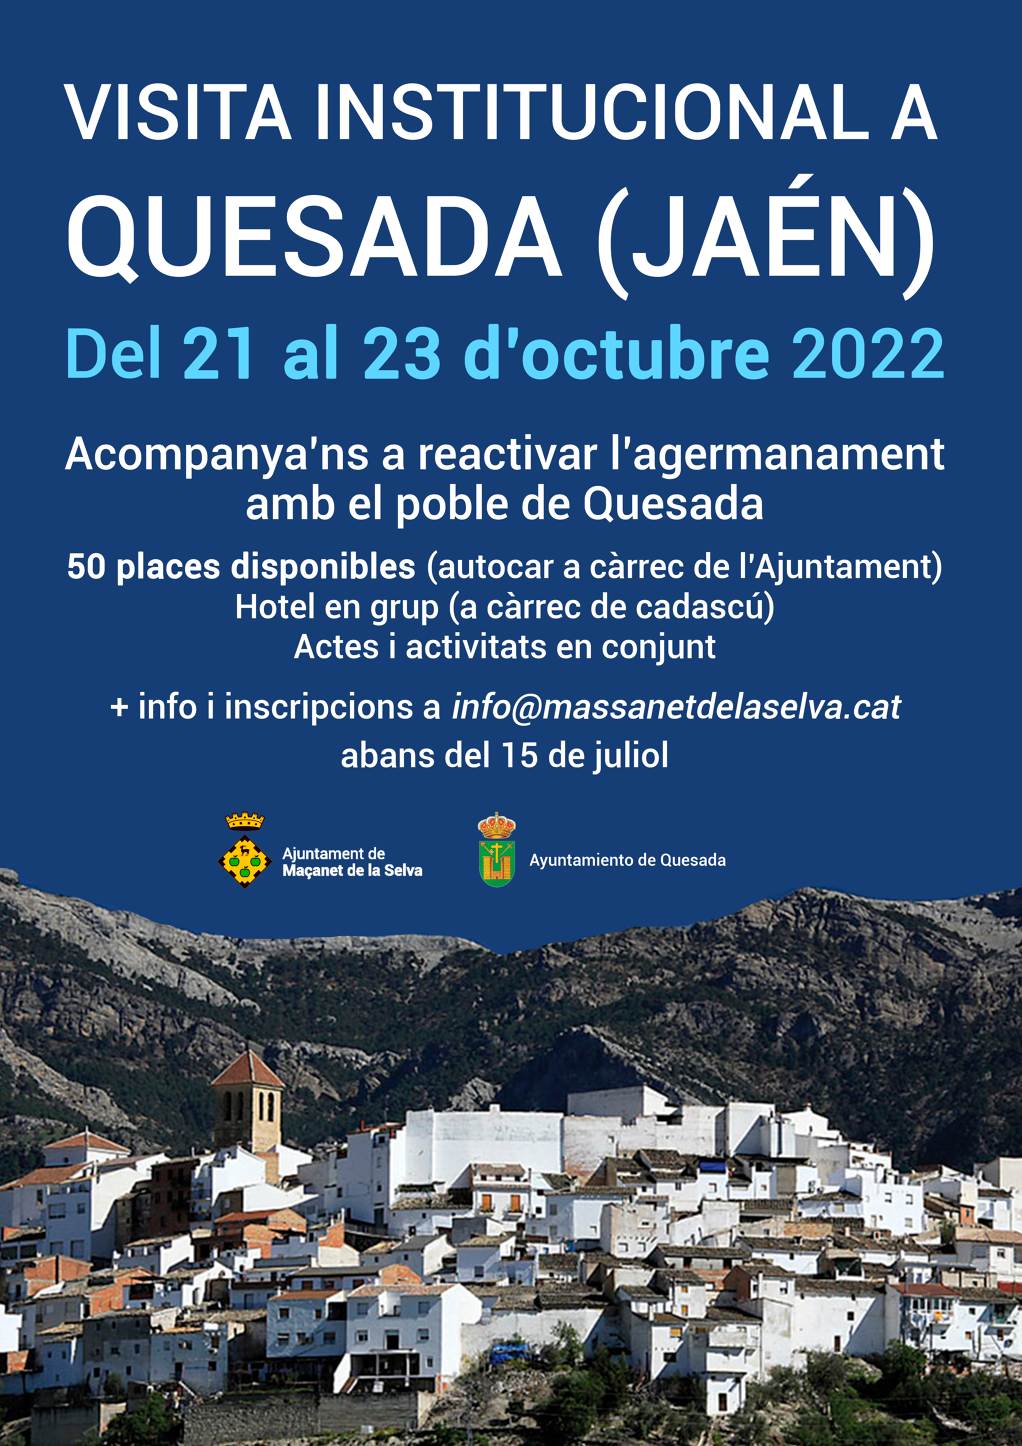 Visita institucional a Quesada (Jaén), poble agermanat amb Maçanet de la Selva - e3687-visita-quesada.png